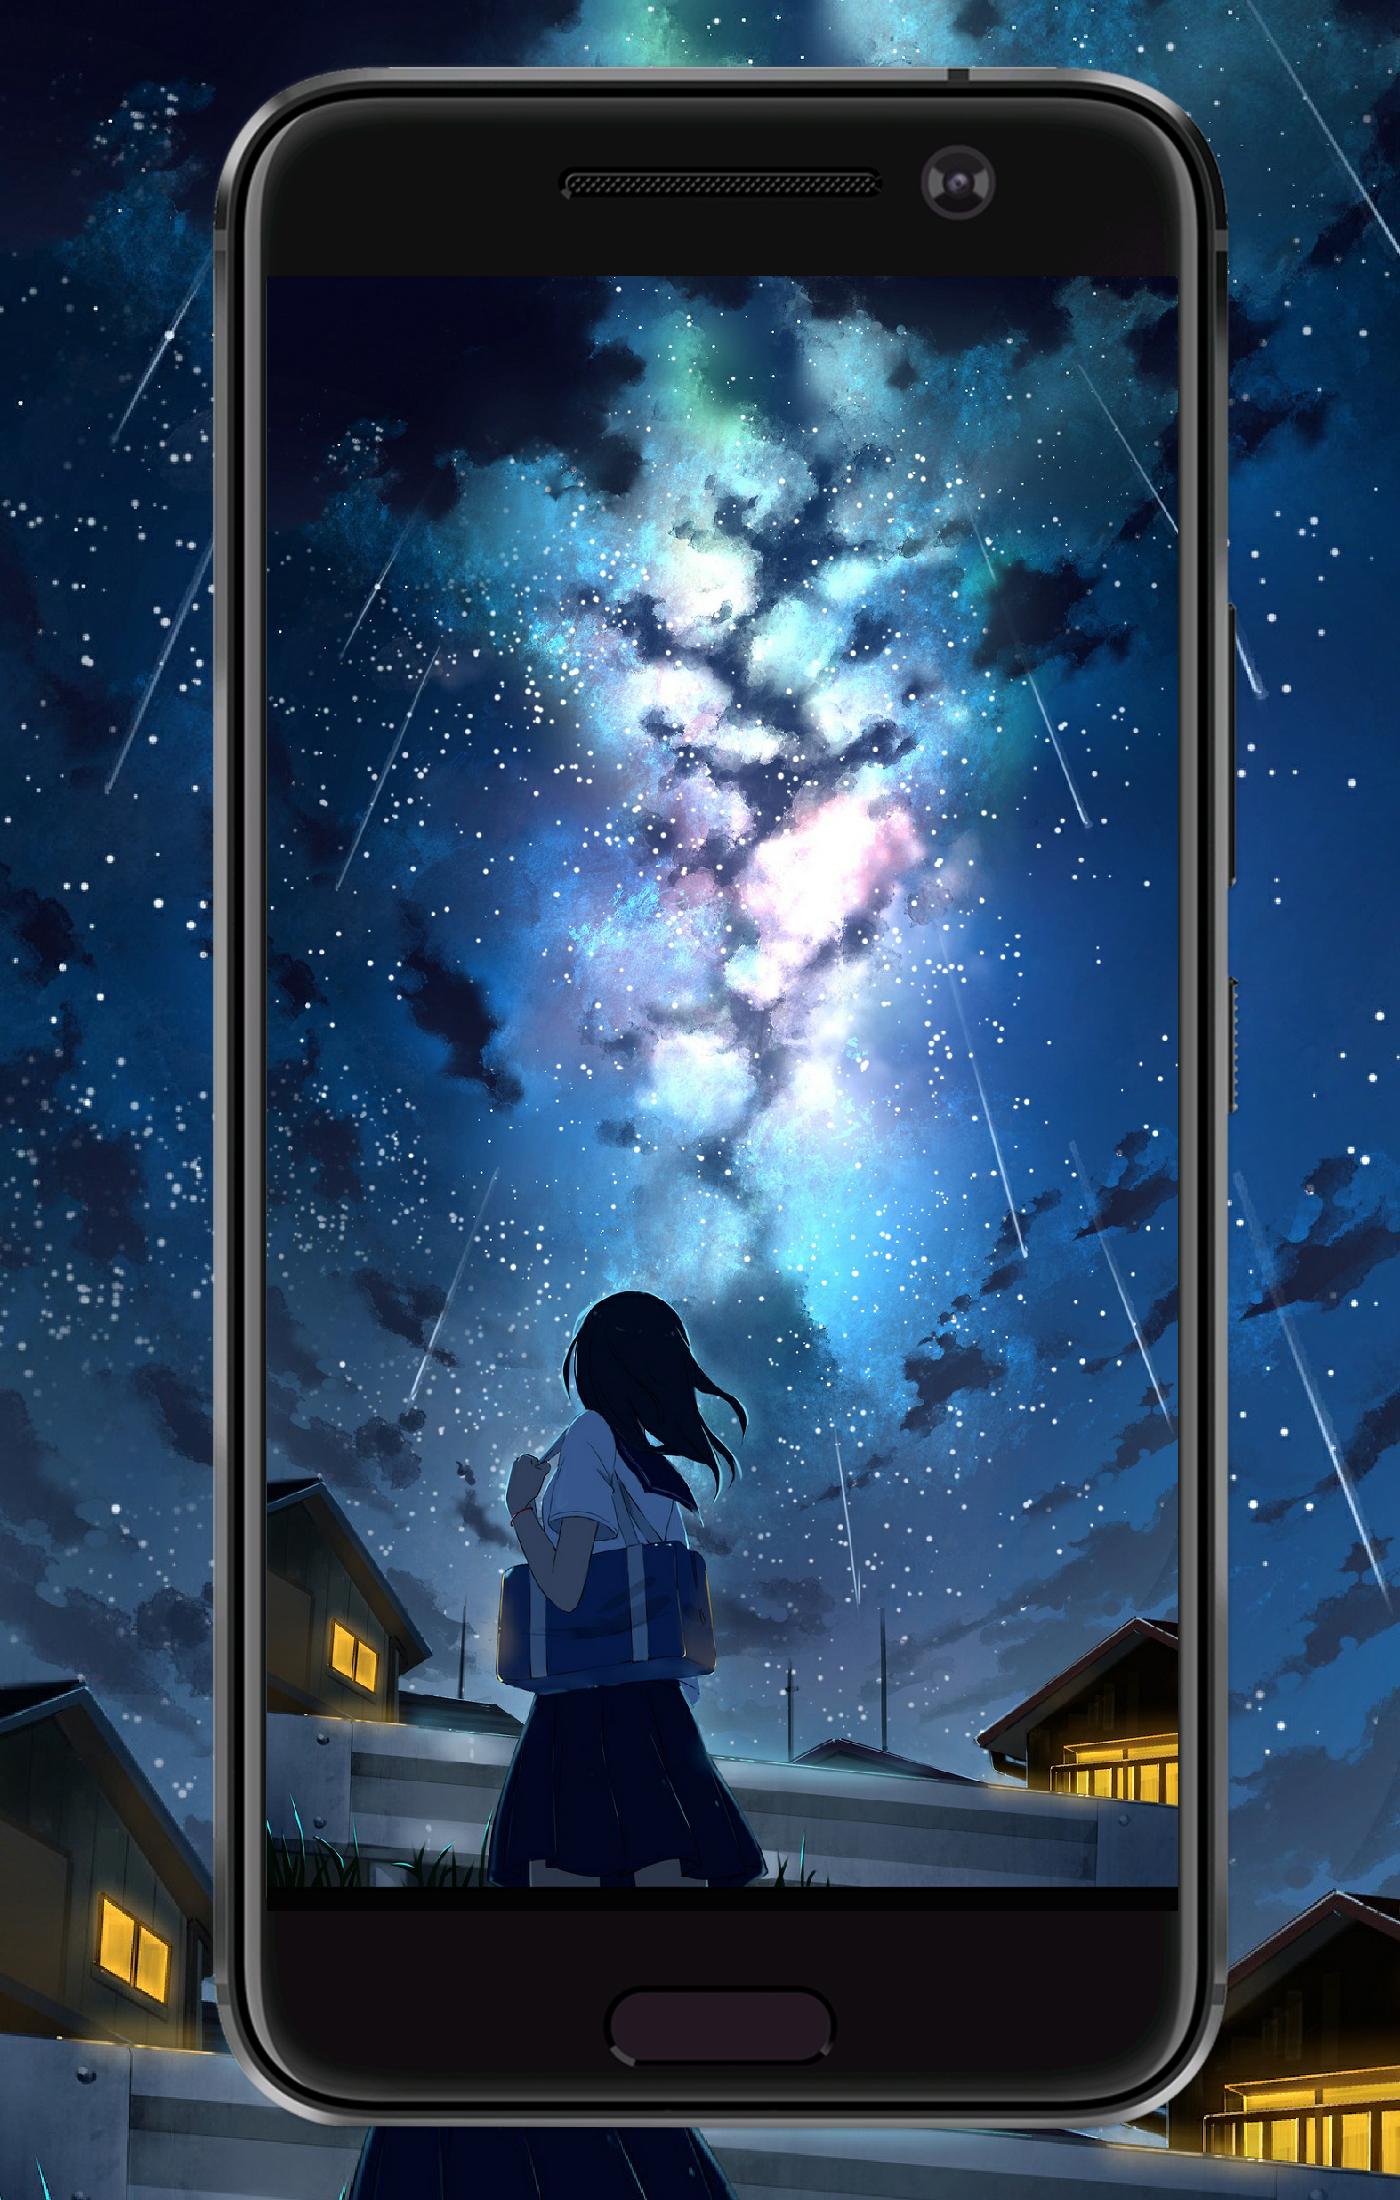 Download Gambar Wallpaper Anime Kimi No Nawa Hd Android  